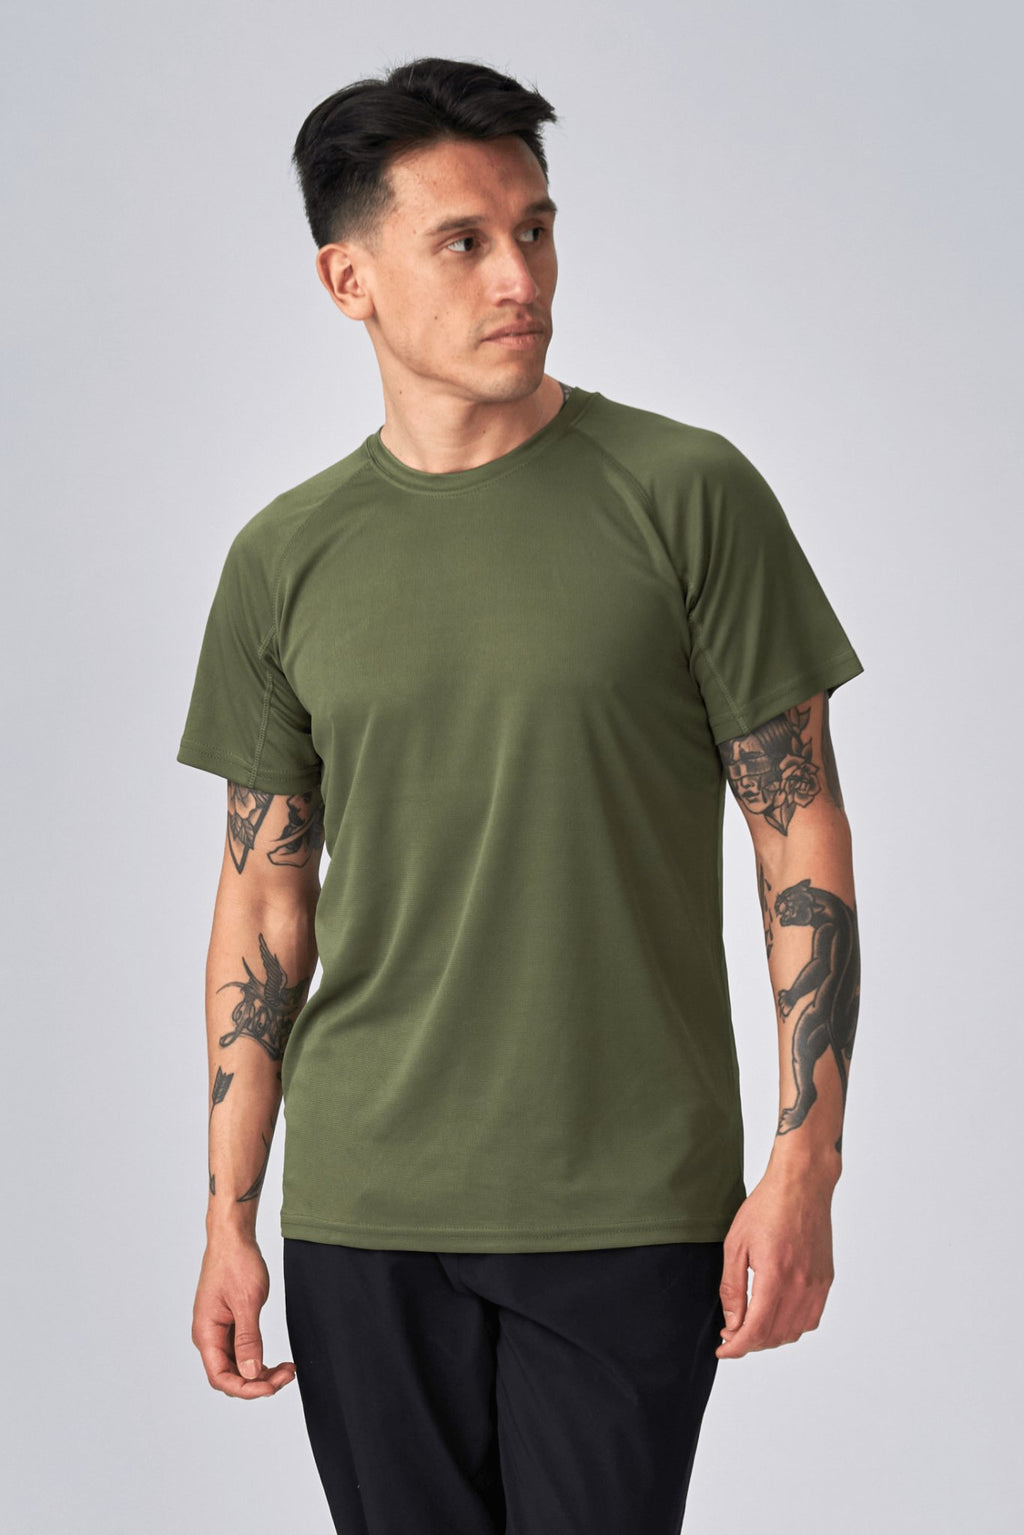 Tréningové tričko - Army Green